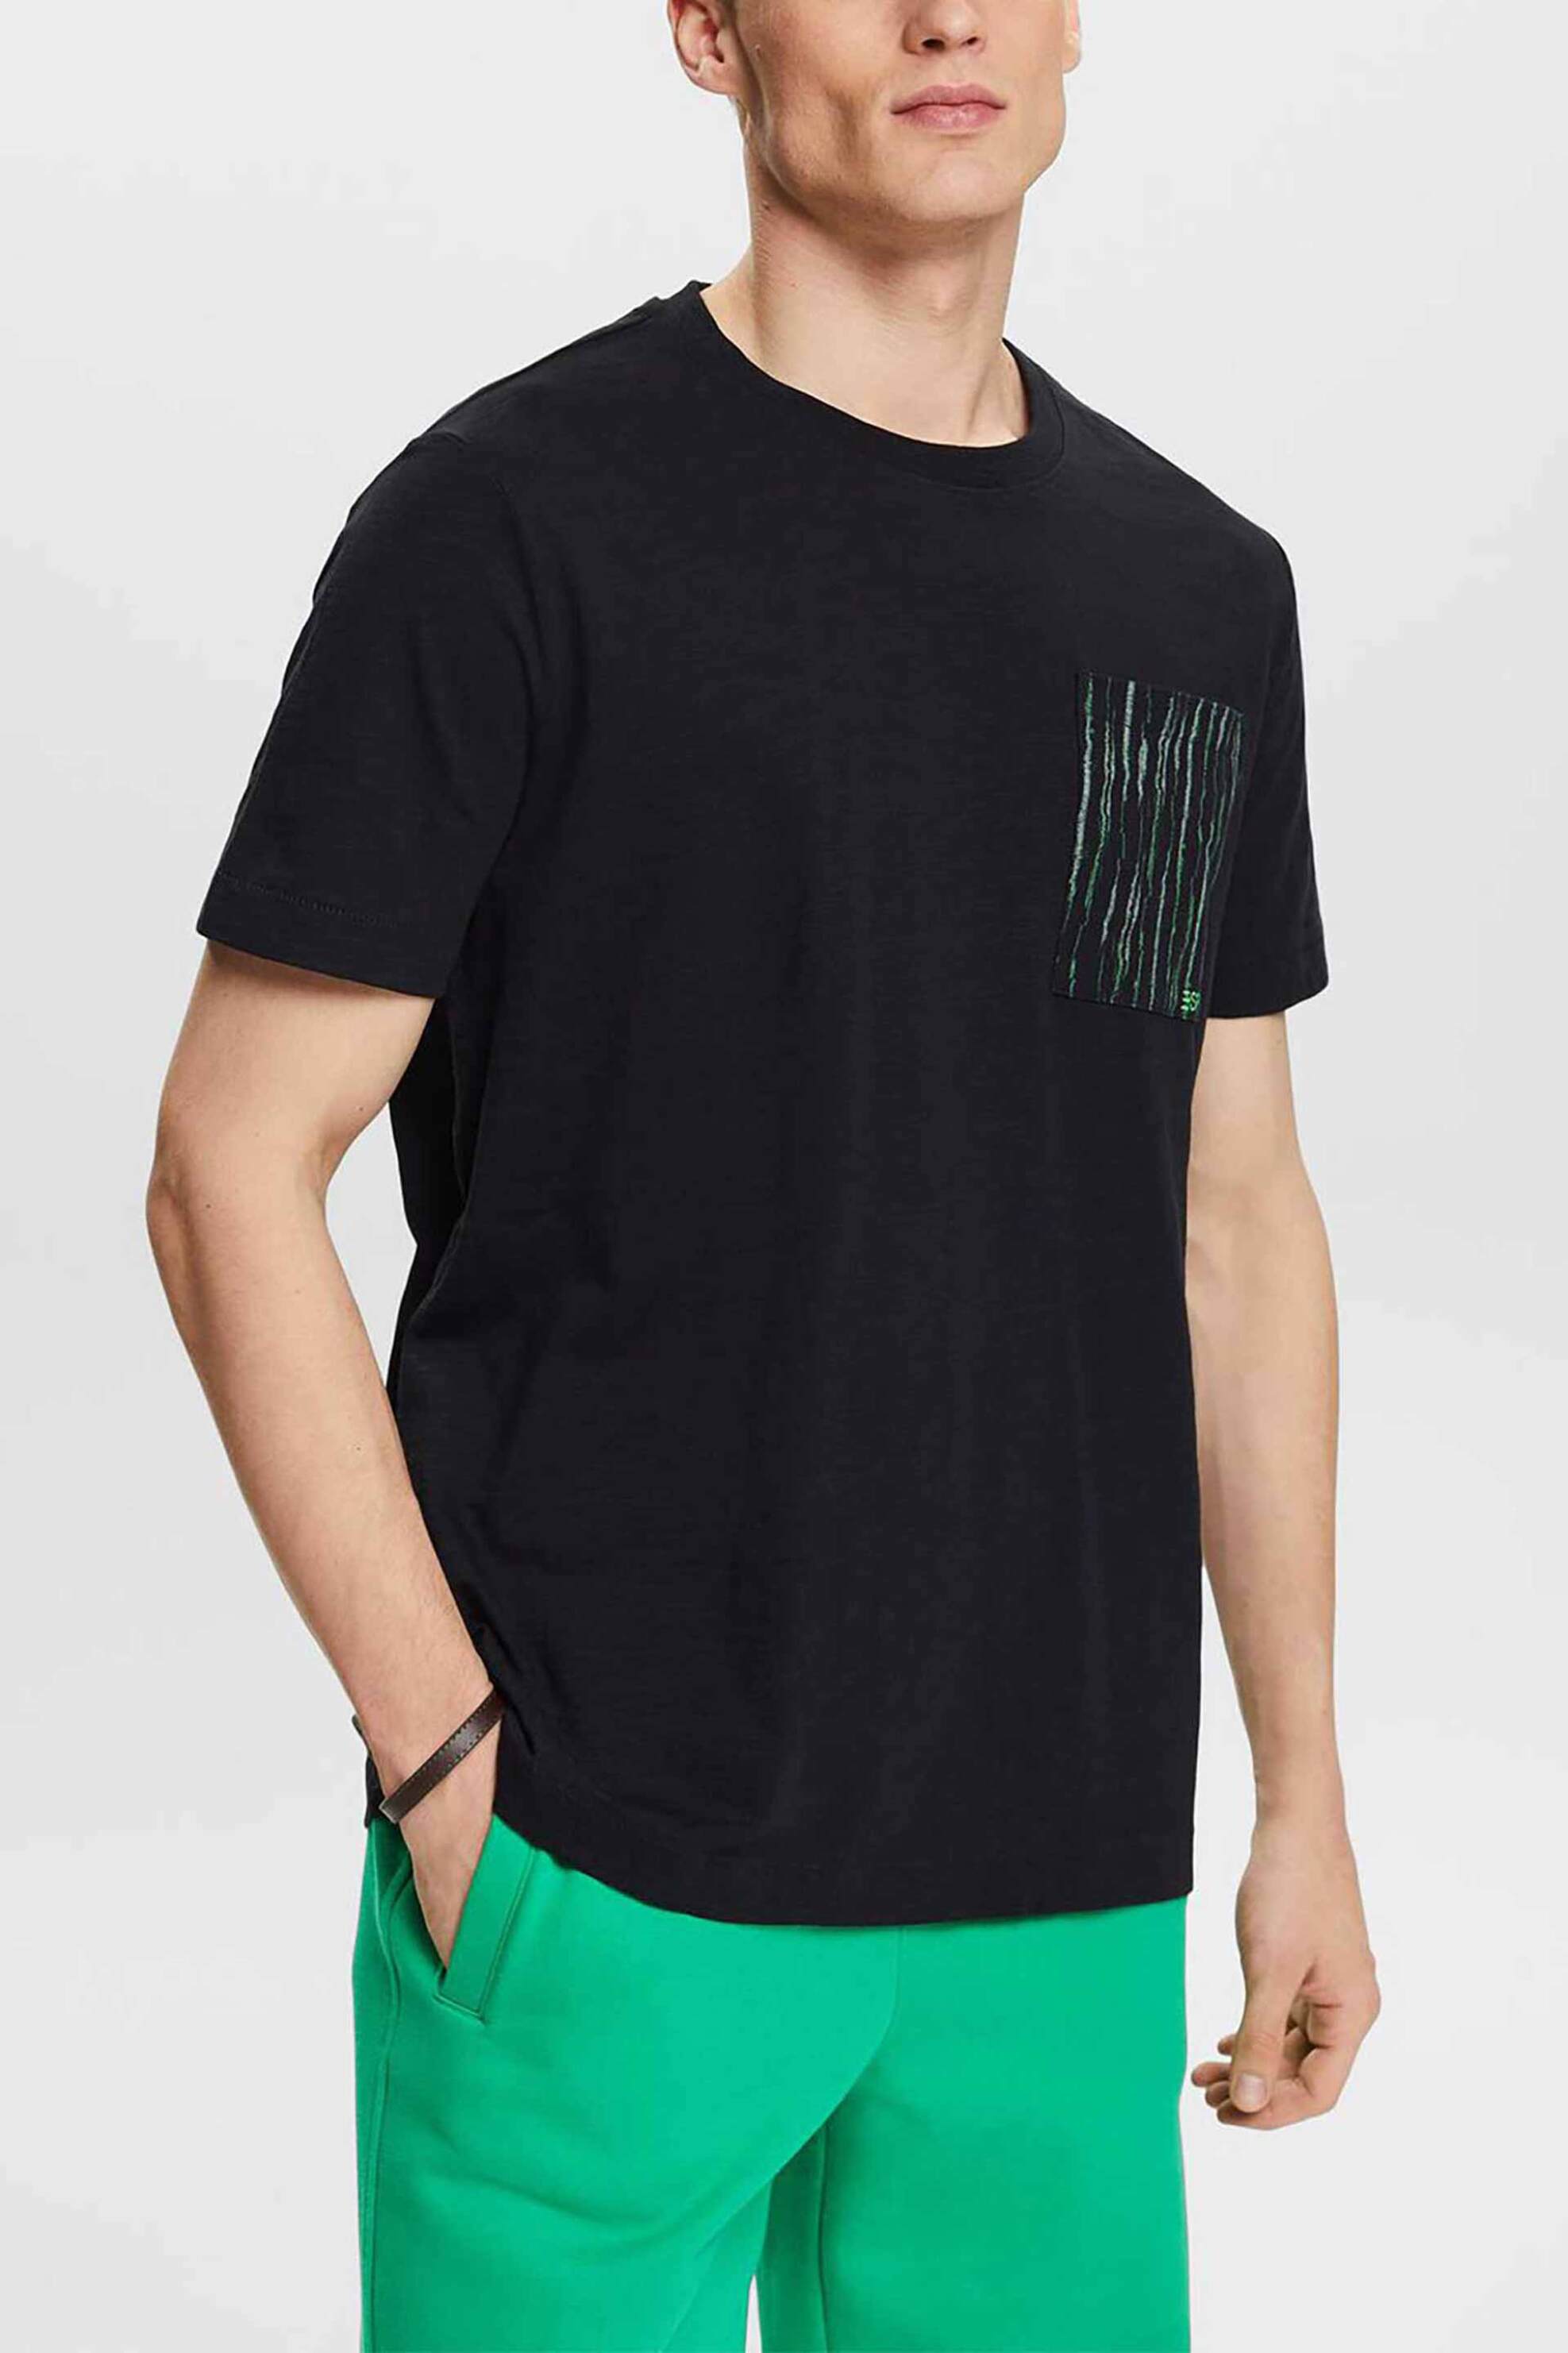 Ανδρική Μόδα > Ανδρικά Ρούχα > Ανδρικές Μπλούζες > Ανδρικά T-Shirts Esprit ανδρικό T-shirt με τσέπη και λογότυπο Relaxed Fit - 034EE2K304 Μαύρο